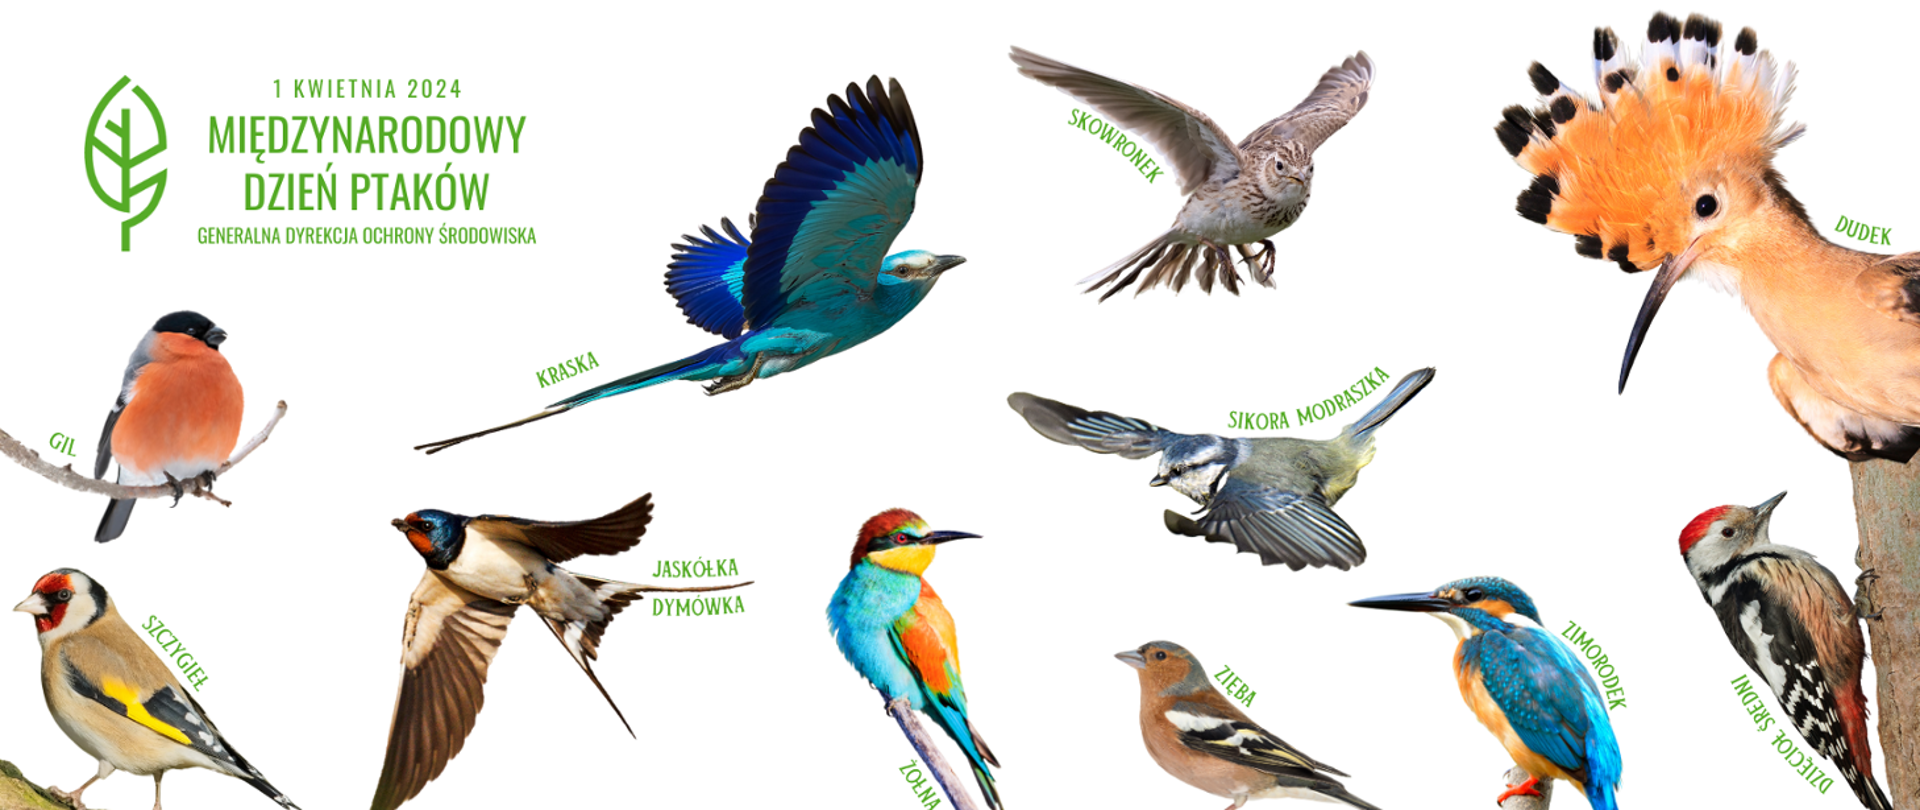 Na białym tle wizerunki kolorowych ptaków: gil, szczygieł, kraska, jaskółka dymówka, żołna, skowronek, sikorka modraszka zięba, dudek, zimorodek, dzięcioł średni. W lewym górnym rogu napis Międzynarodowy Dzień Ptaków i logo Generalnej Dyrekcji Ochrony Środowiska (zielony liść na białym tle)